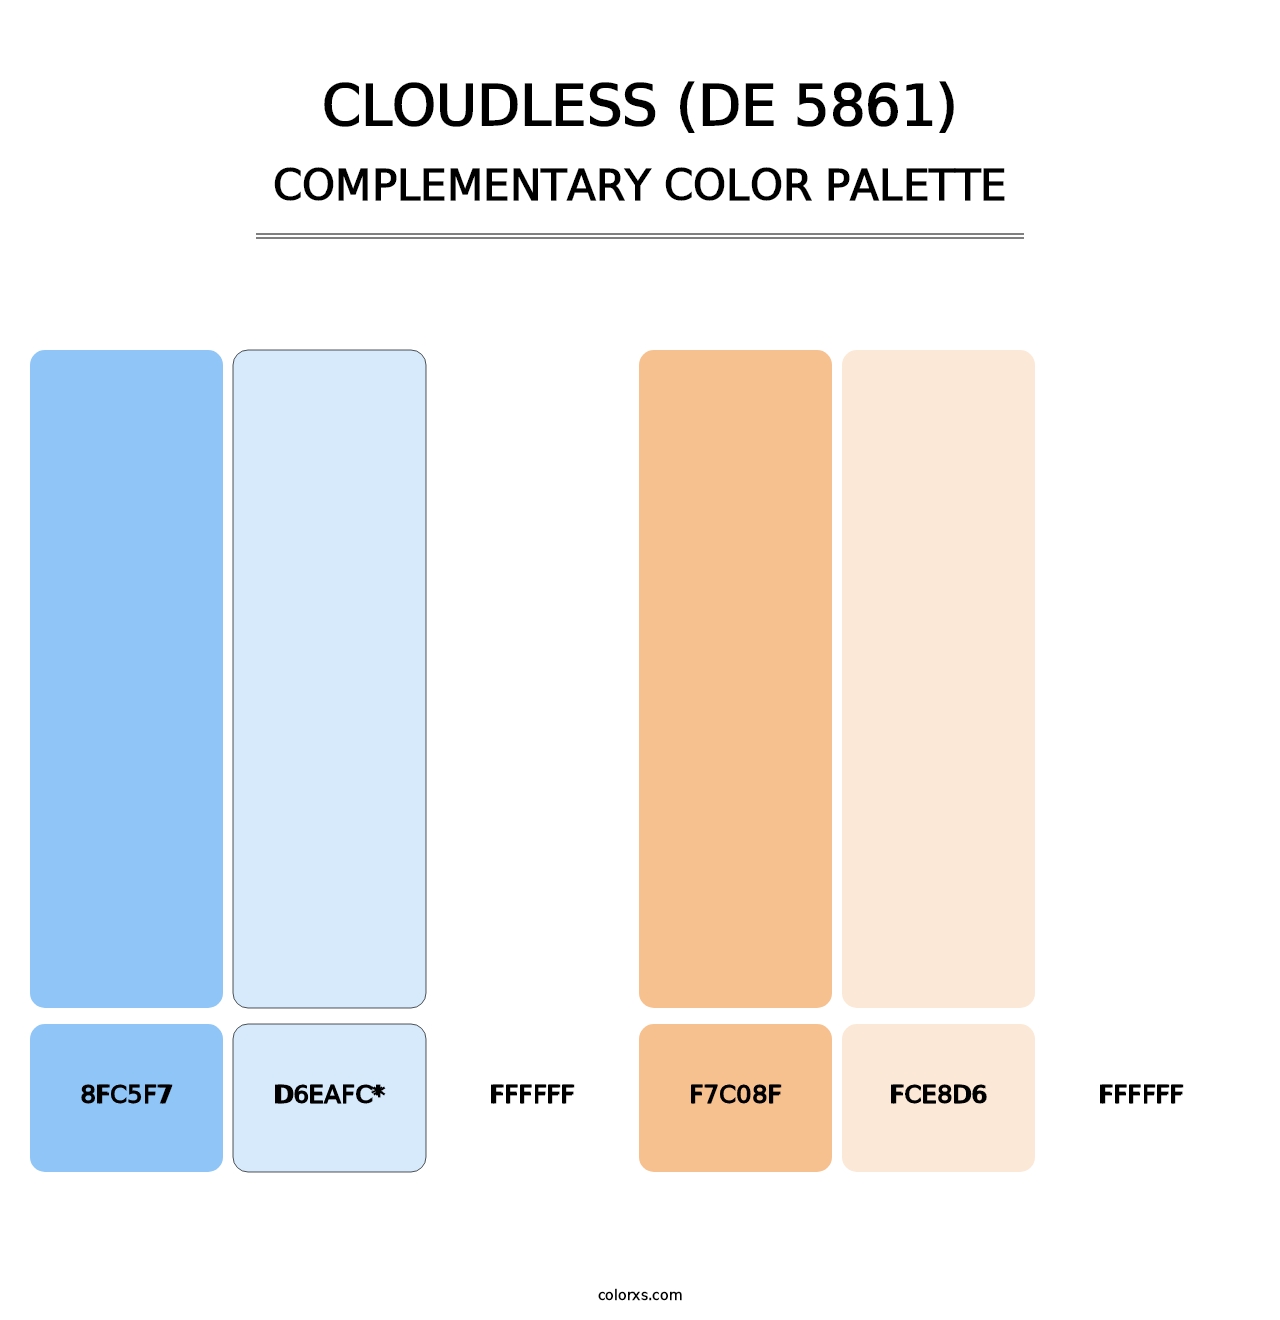 Cloudless (DE 5861) - Complementary Color Palette